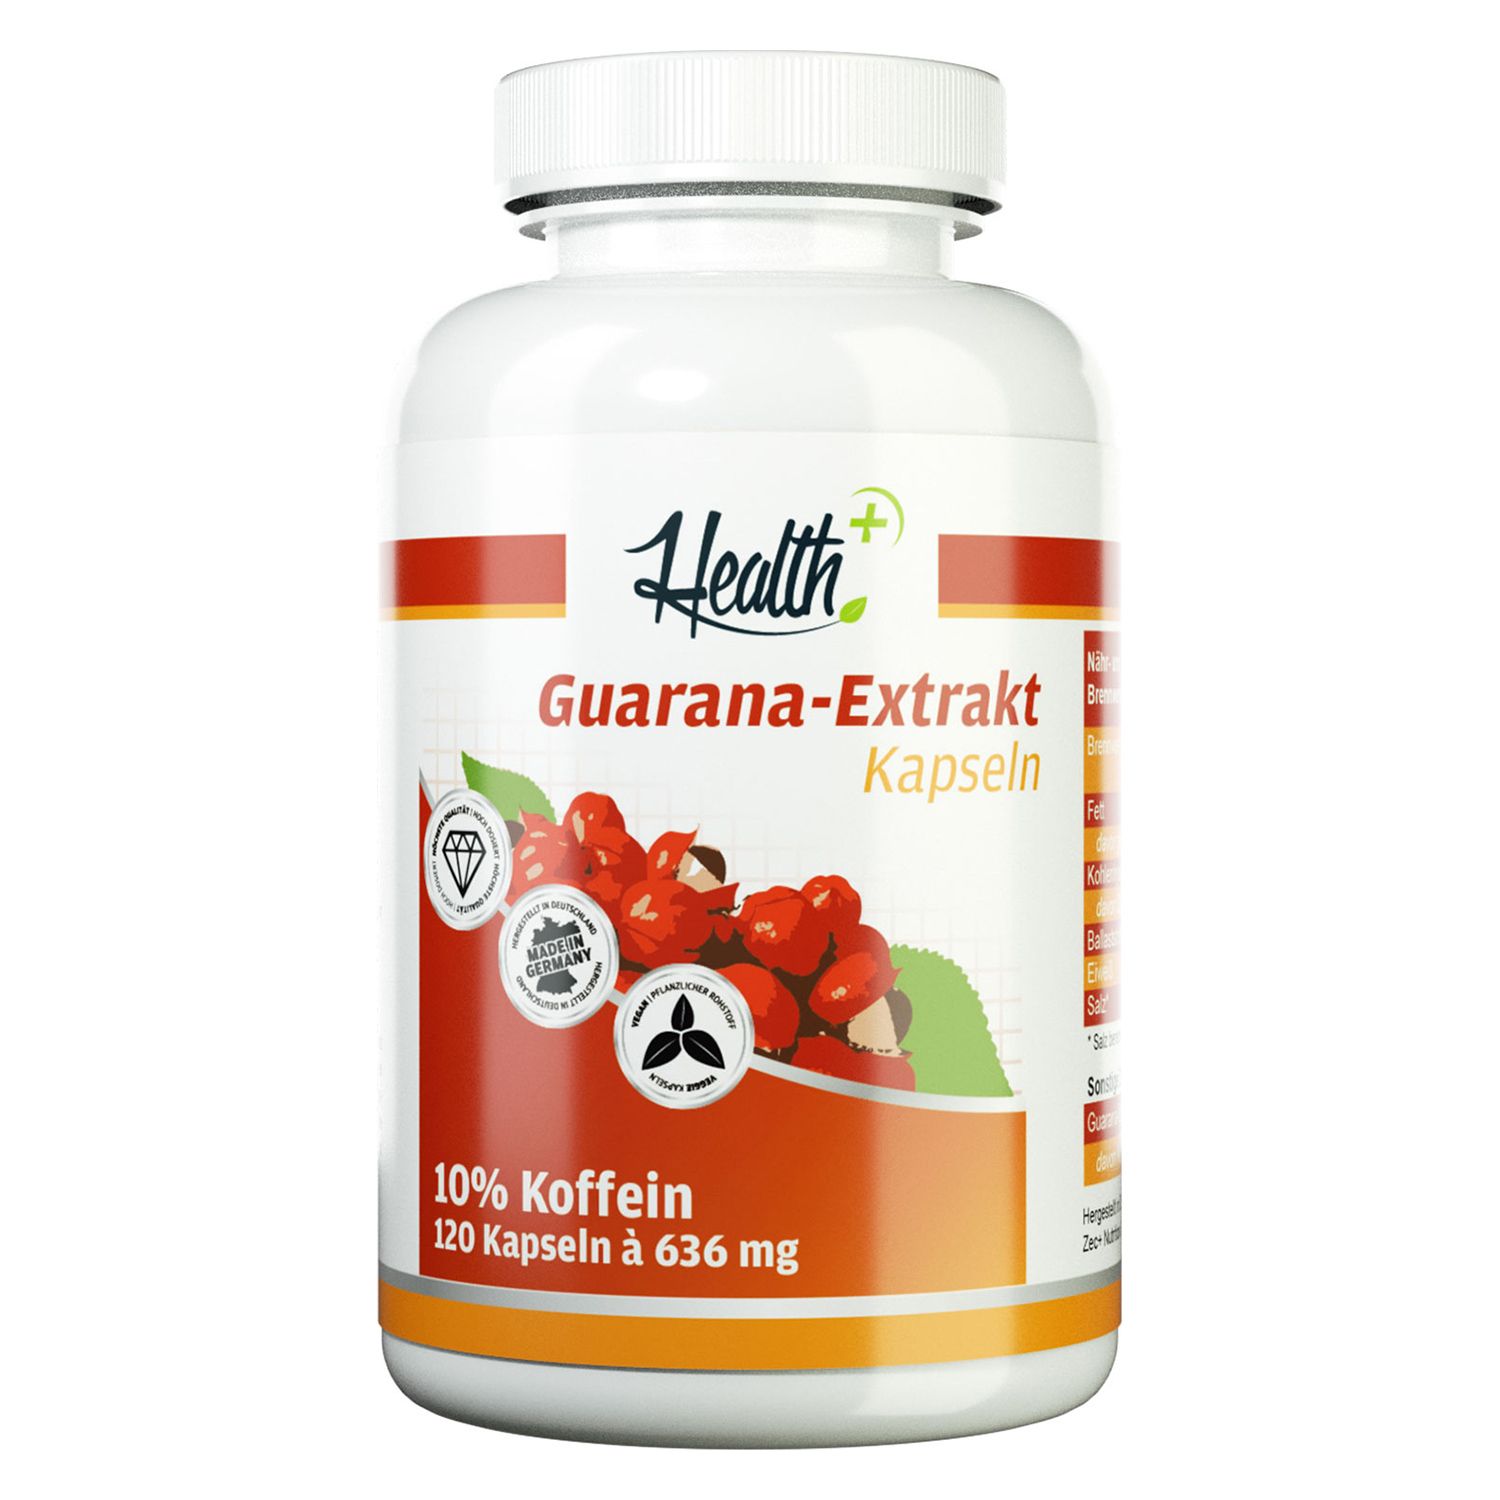 Health+ Guarana-Extrakt